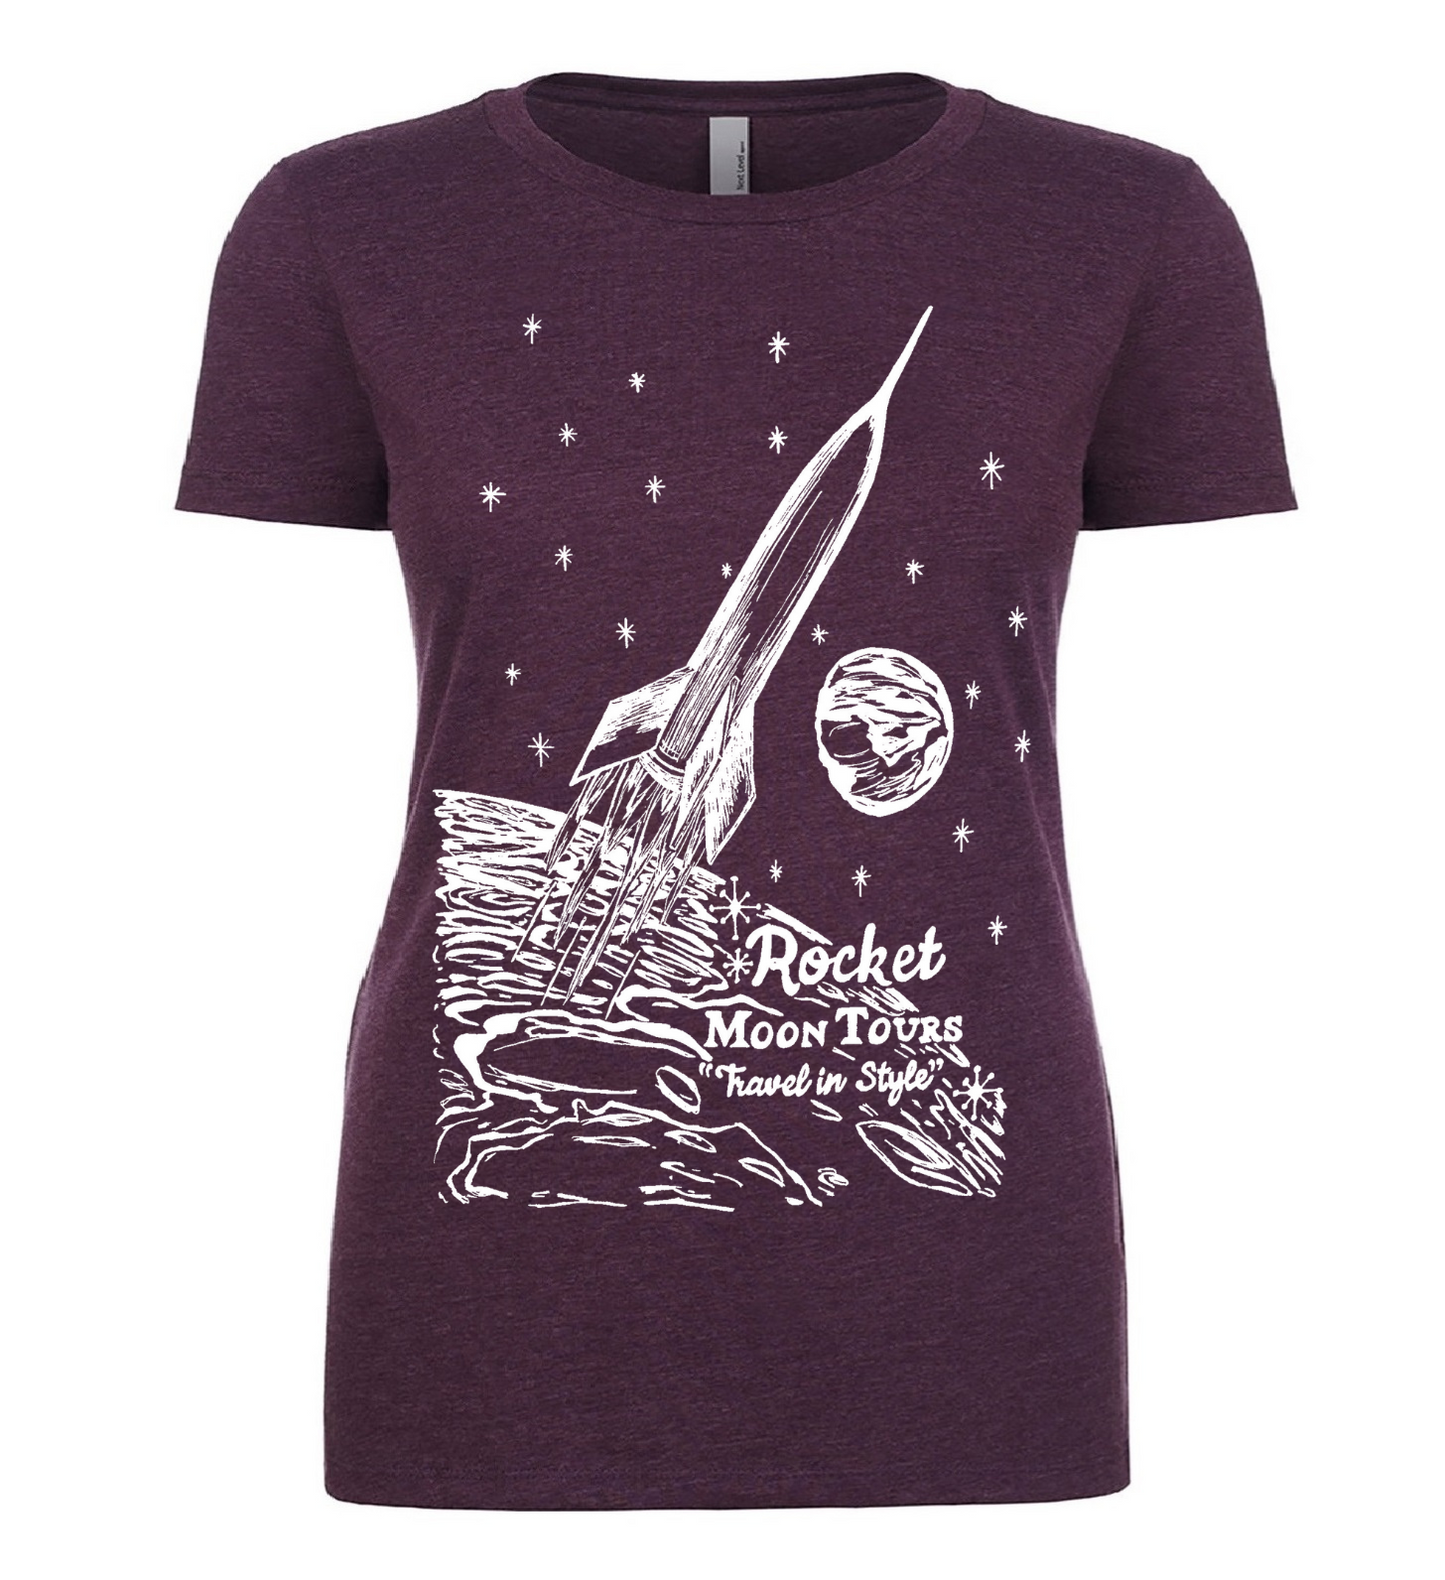 Rocket Moon Tours Ladies T Shirt